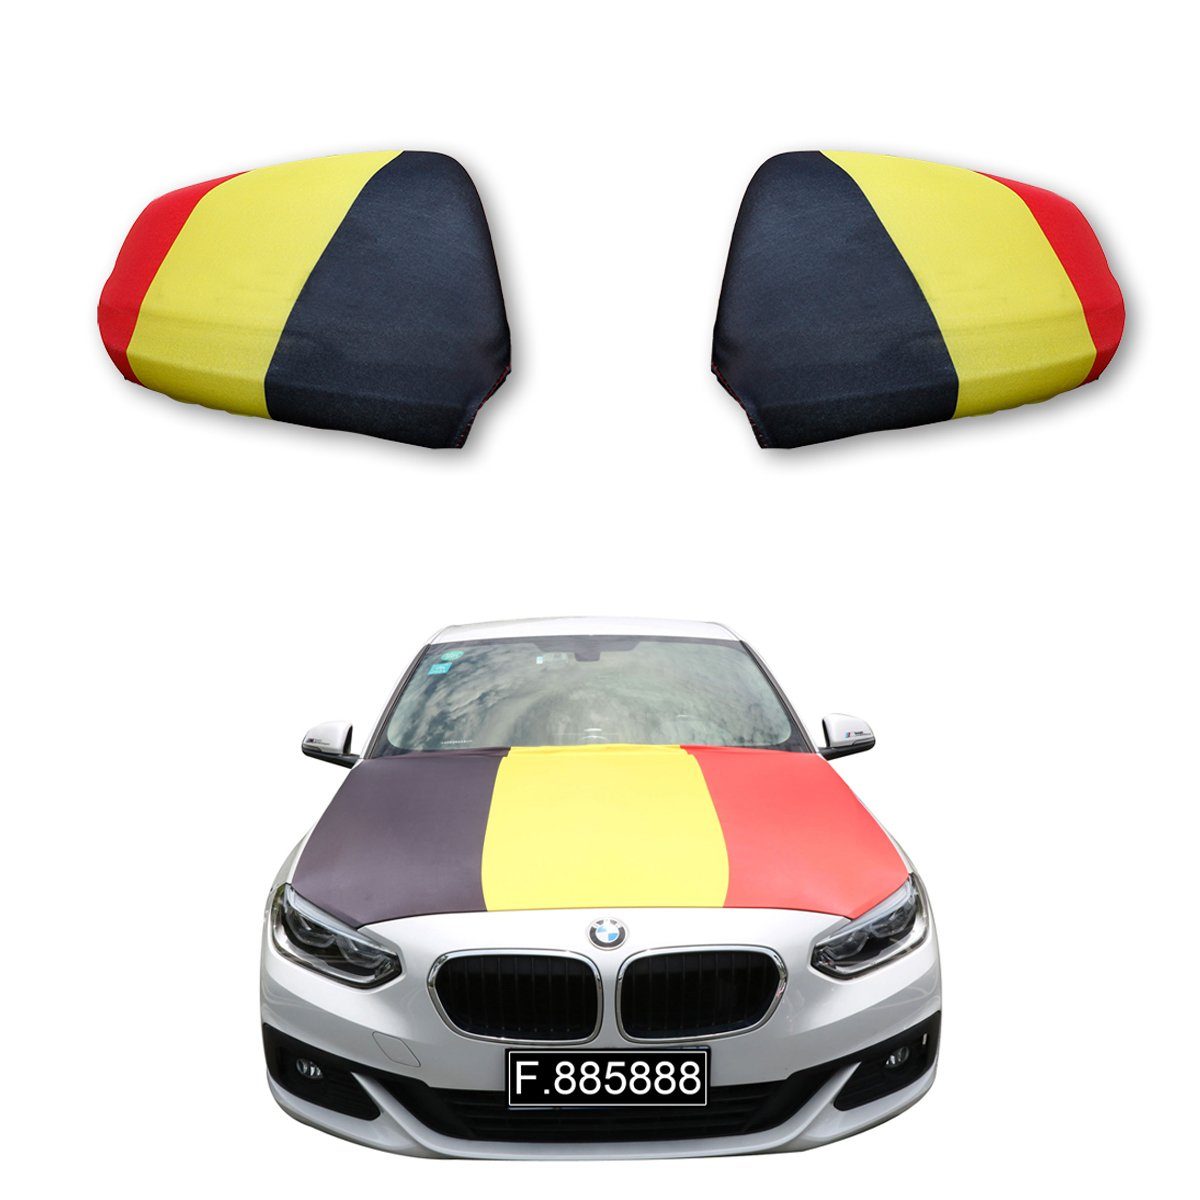 Sonia Originelli Fahne Fanset "Belgien" Belgium Fußball Motorhaube Außenspiegel Flagge, für alle gängigen PKW Modelle, Motorhauben Flagge: ca. 115 x 150cm